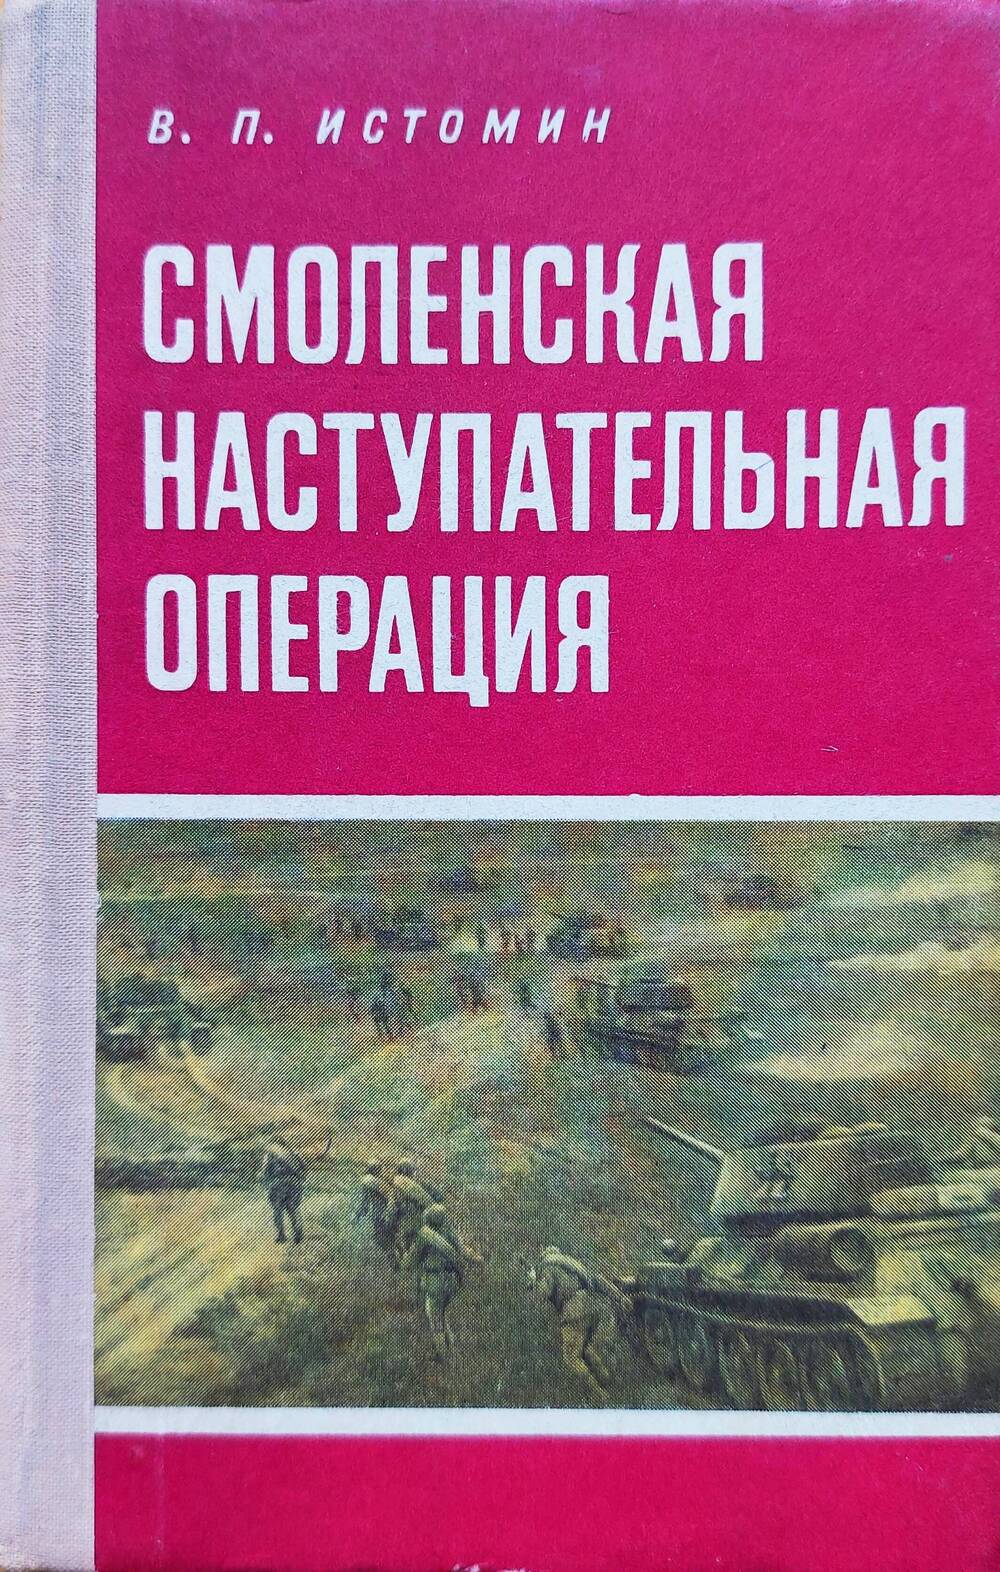 Книга В.П. Истомина Смоленская наступательная операция. Воениздат, 1975 г.